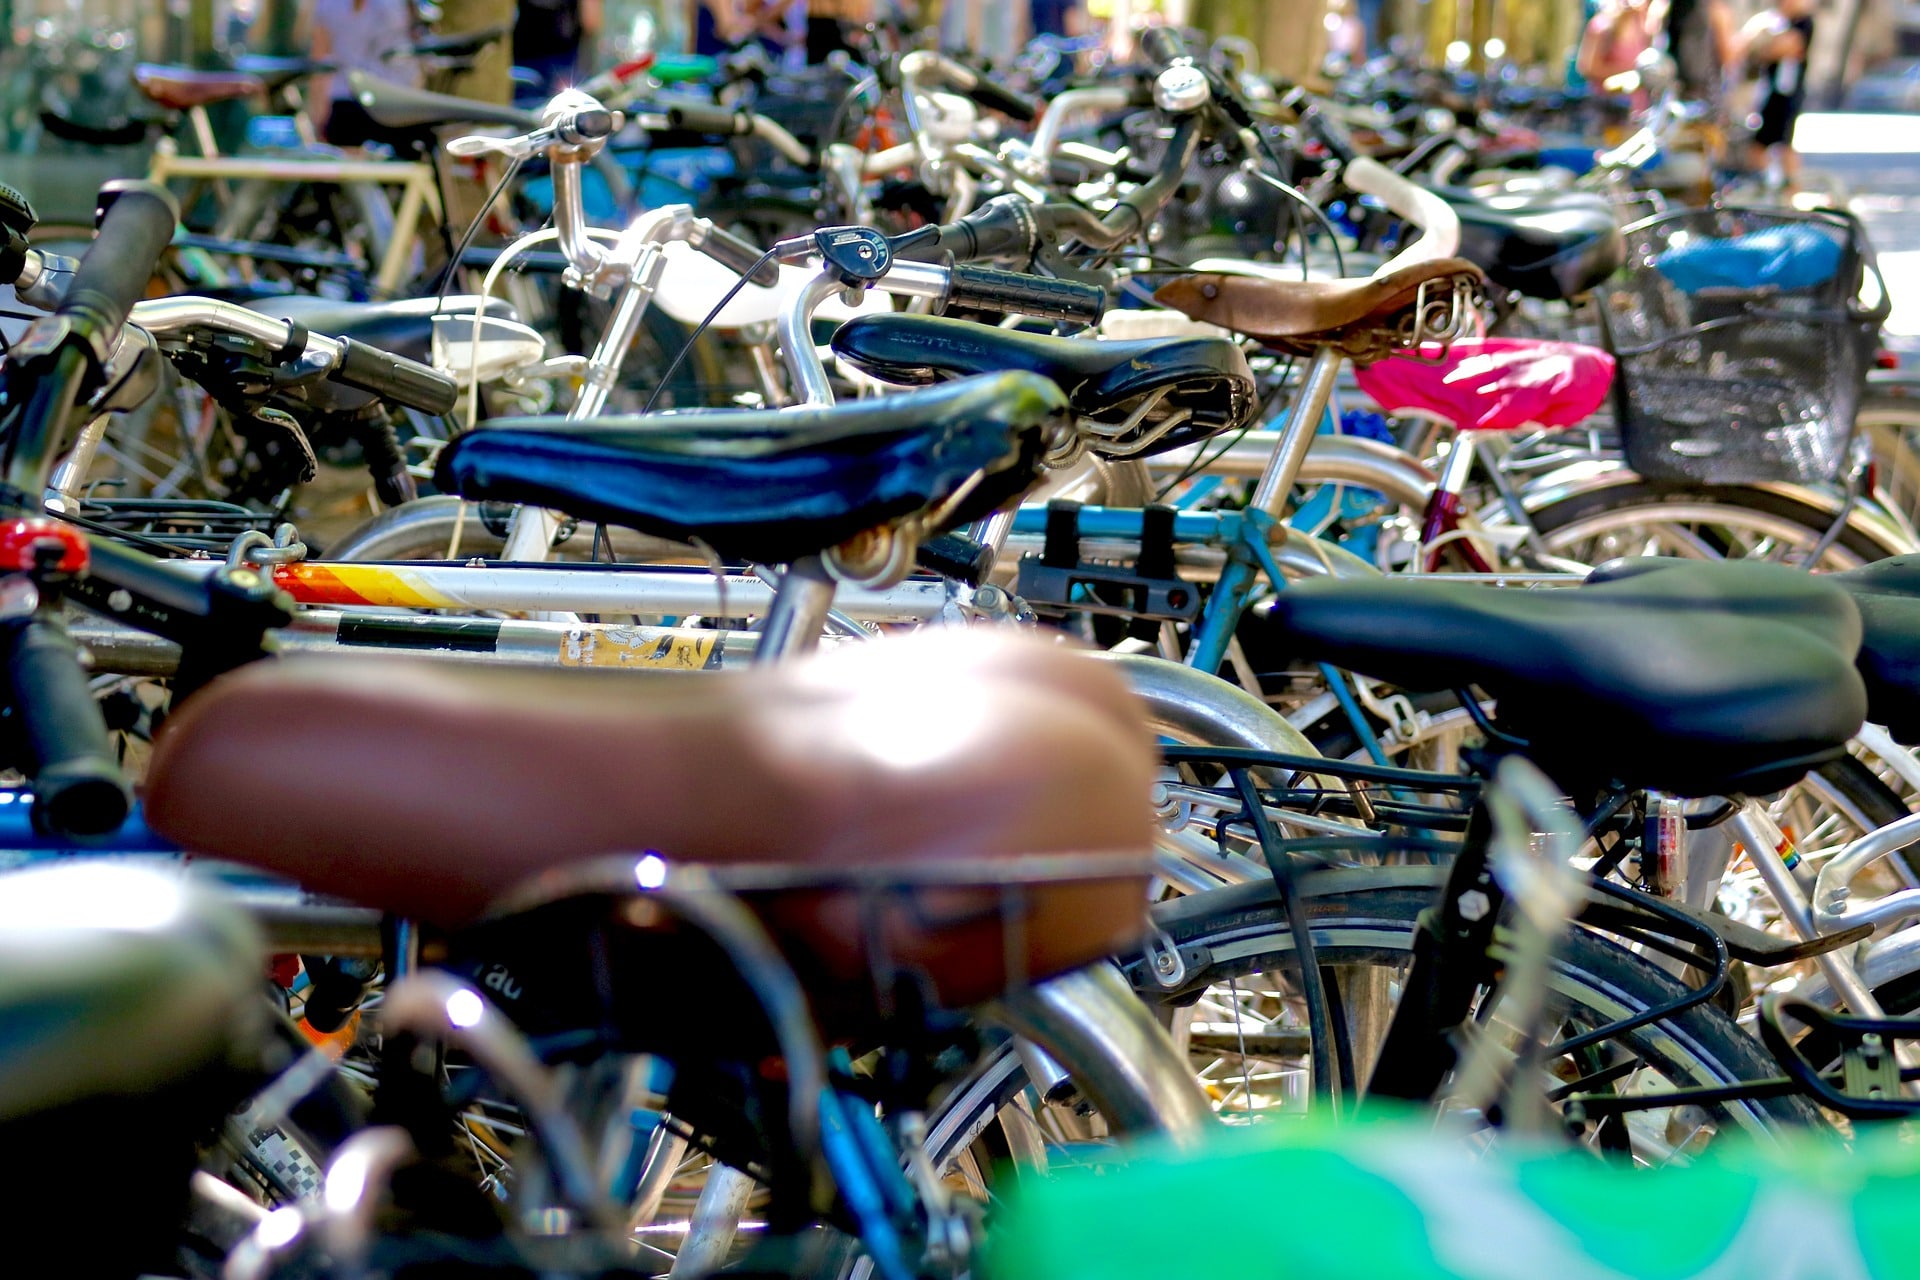 Diebstahlstatistik für Fahrrad und E-Bike: In diesen Städten ist die Gefahr am größten